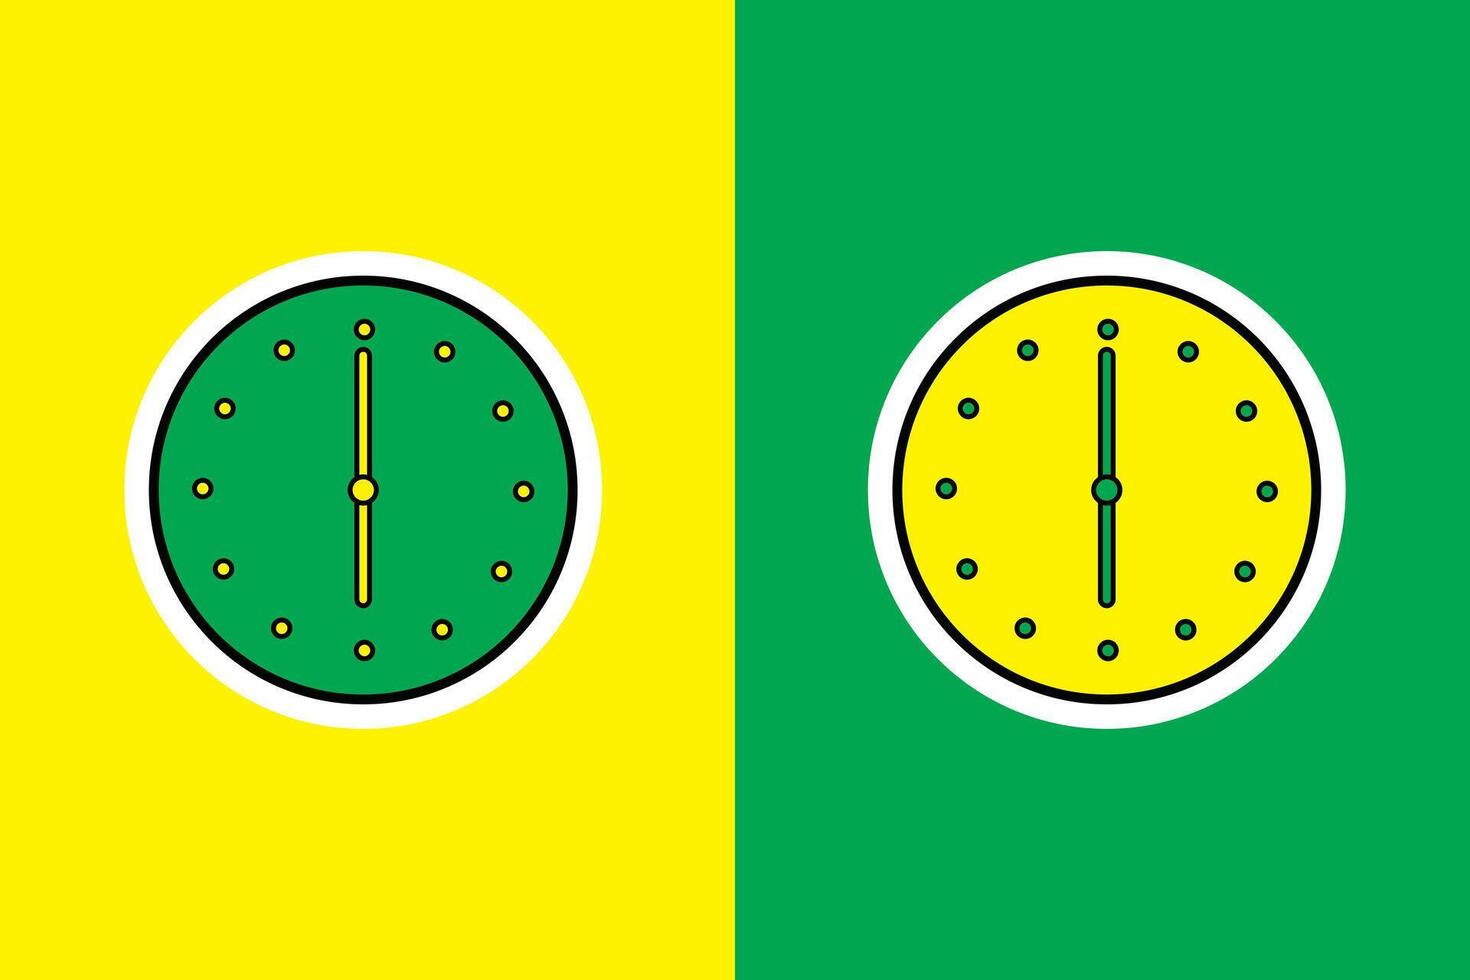 amarillo y verde pared oficina reloj pegatina vector ilustración. hogar interior objeto icono concepto. sencillo redondo pared oficina reloj pegatina vector diseño con sombra.